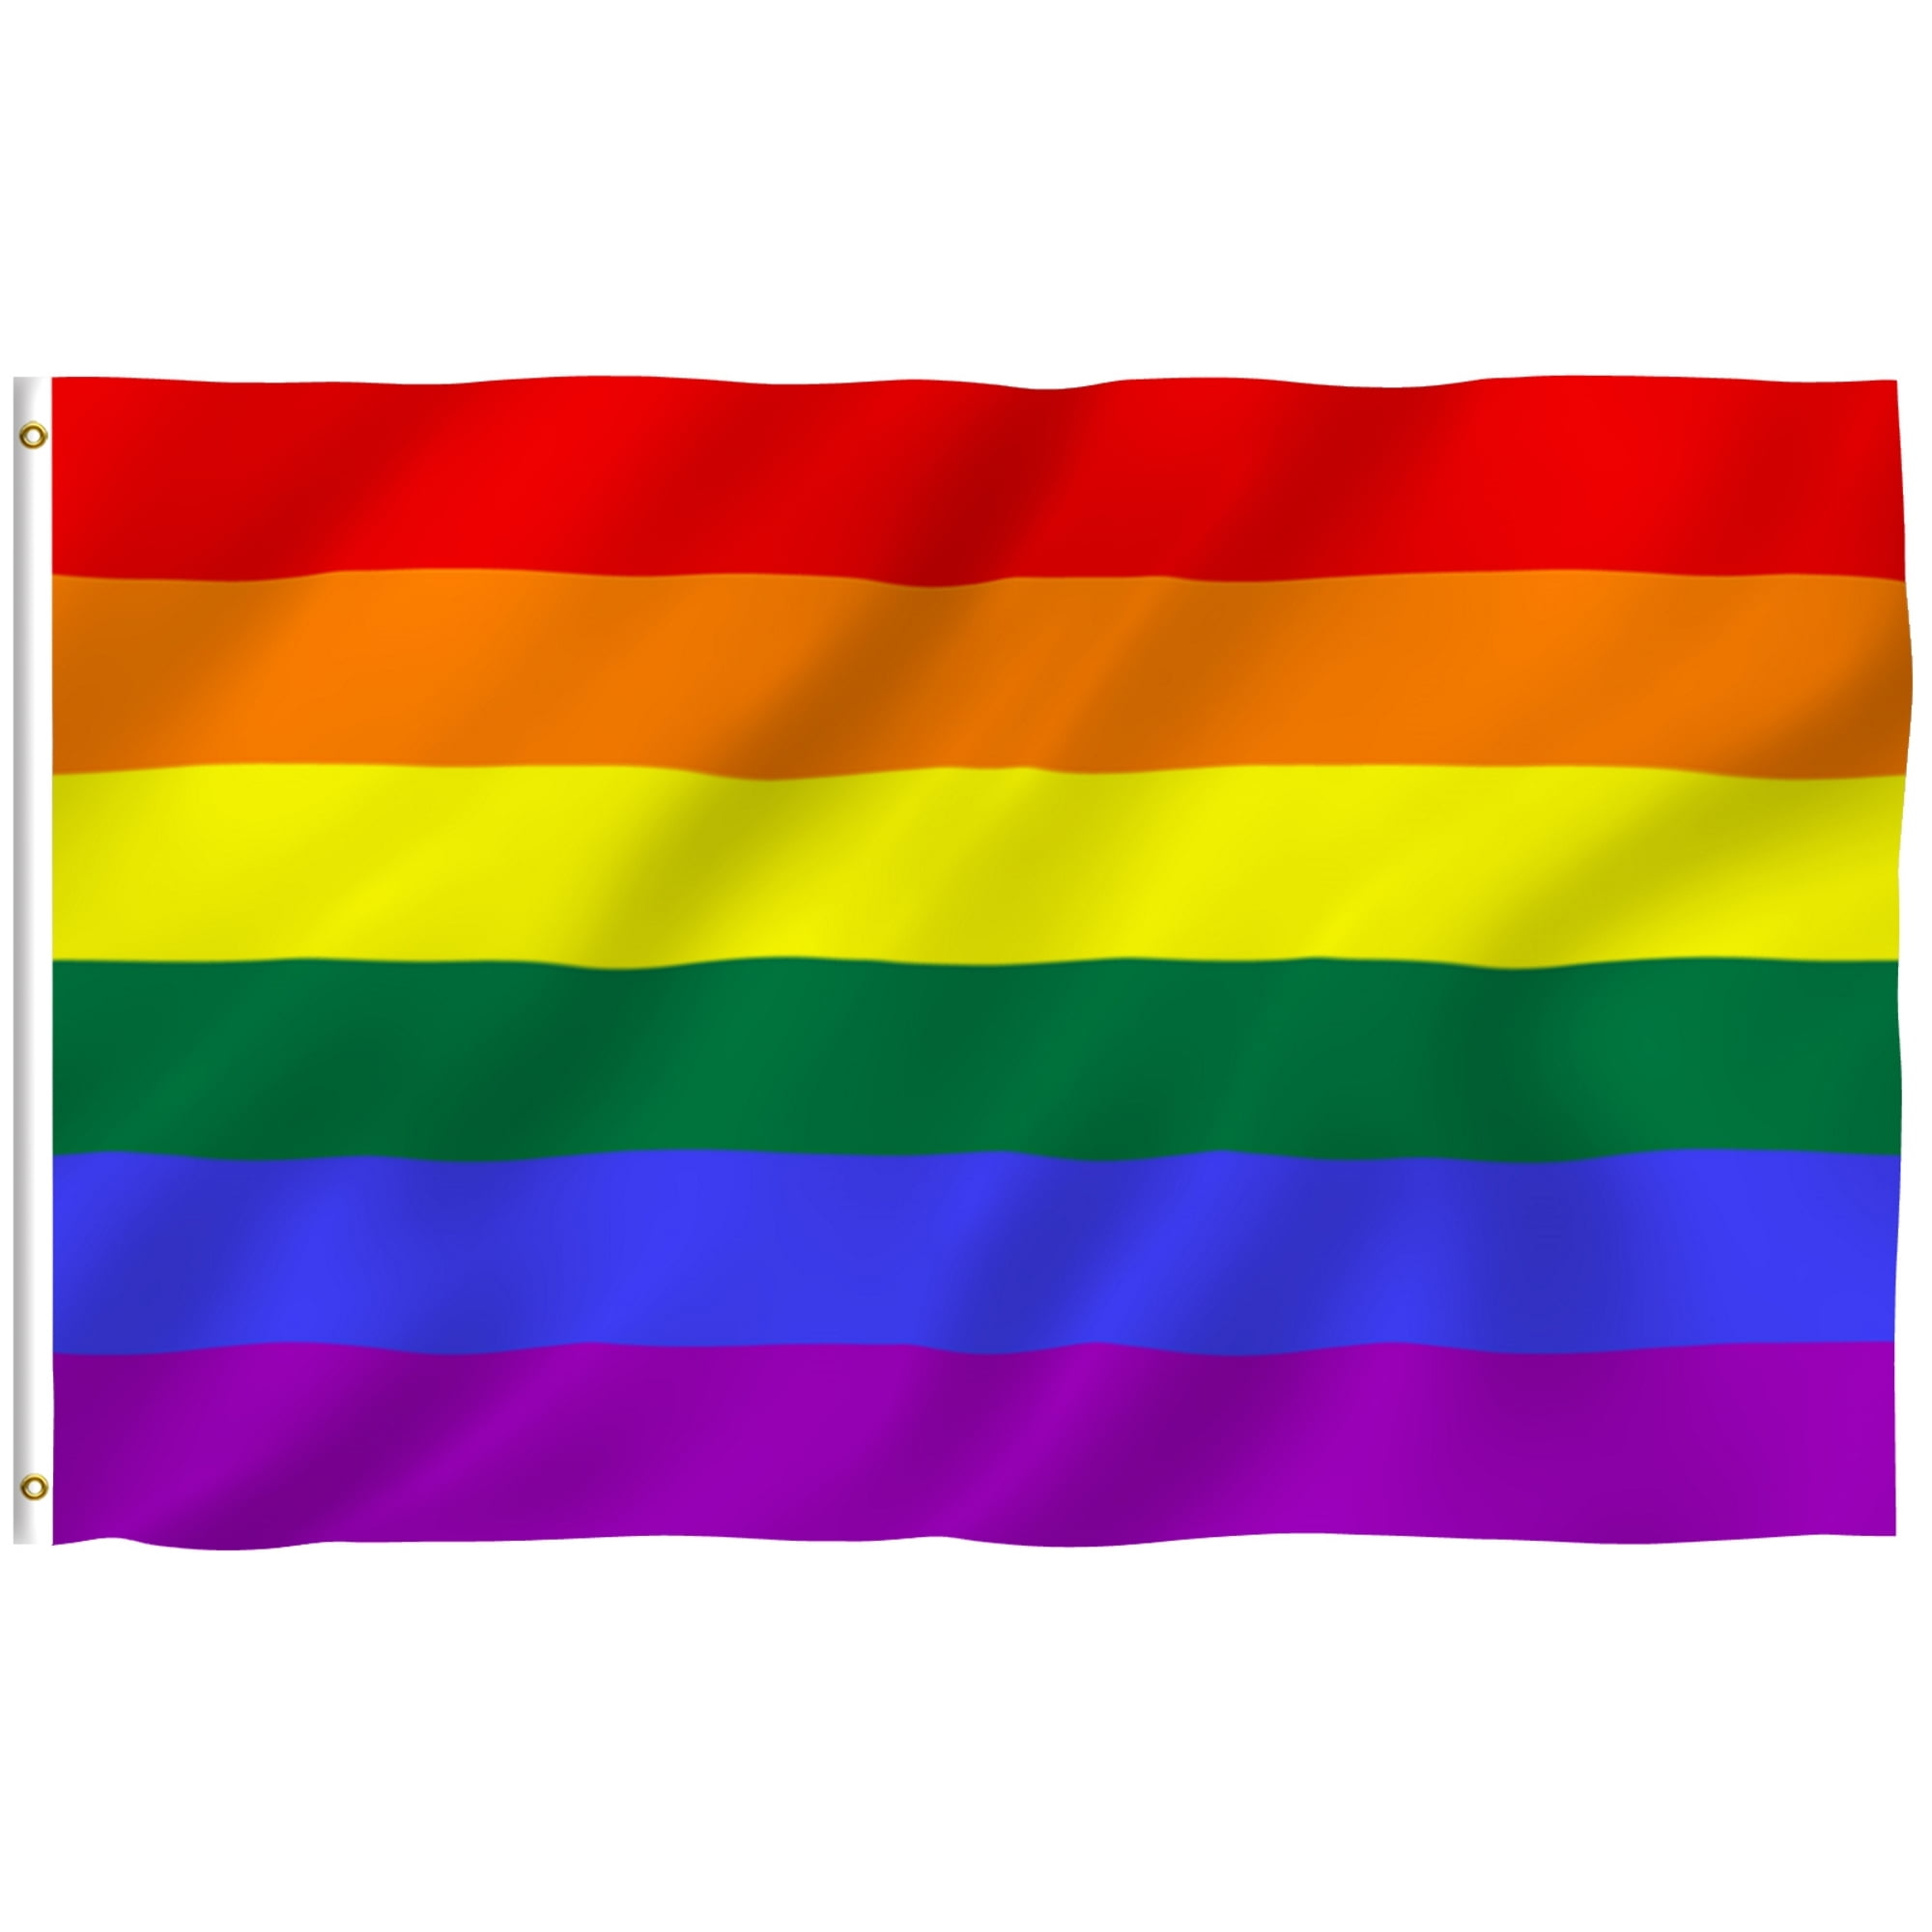 Details about   Pride Rainbow Flag 8 Stripes Colors  5" x 3" Bumper Sticker 